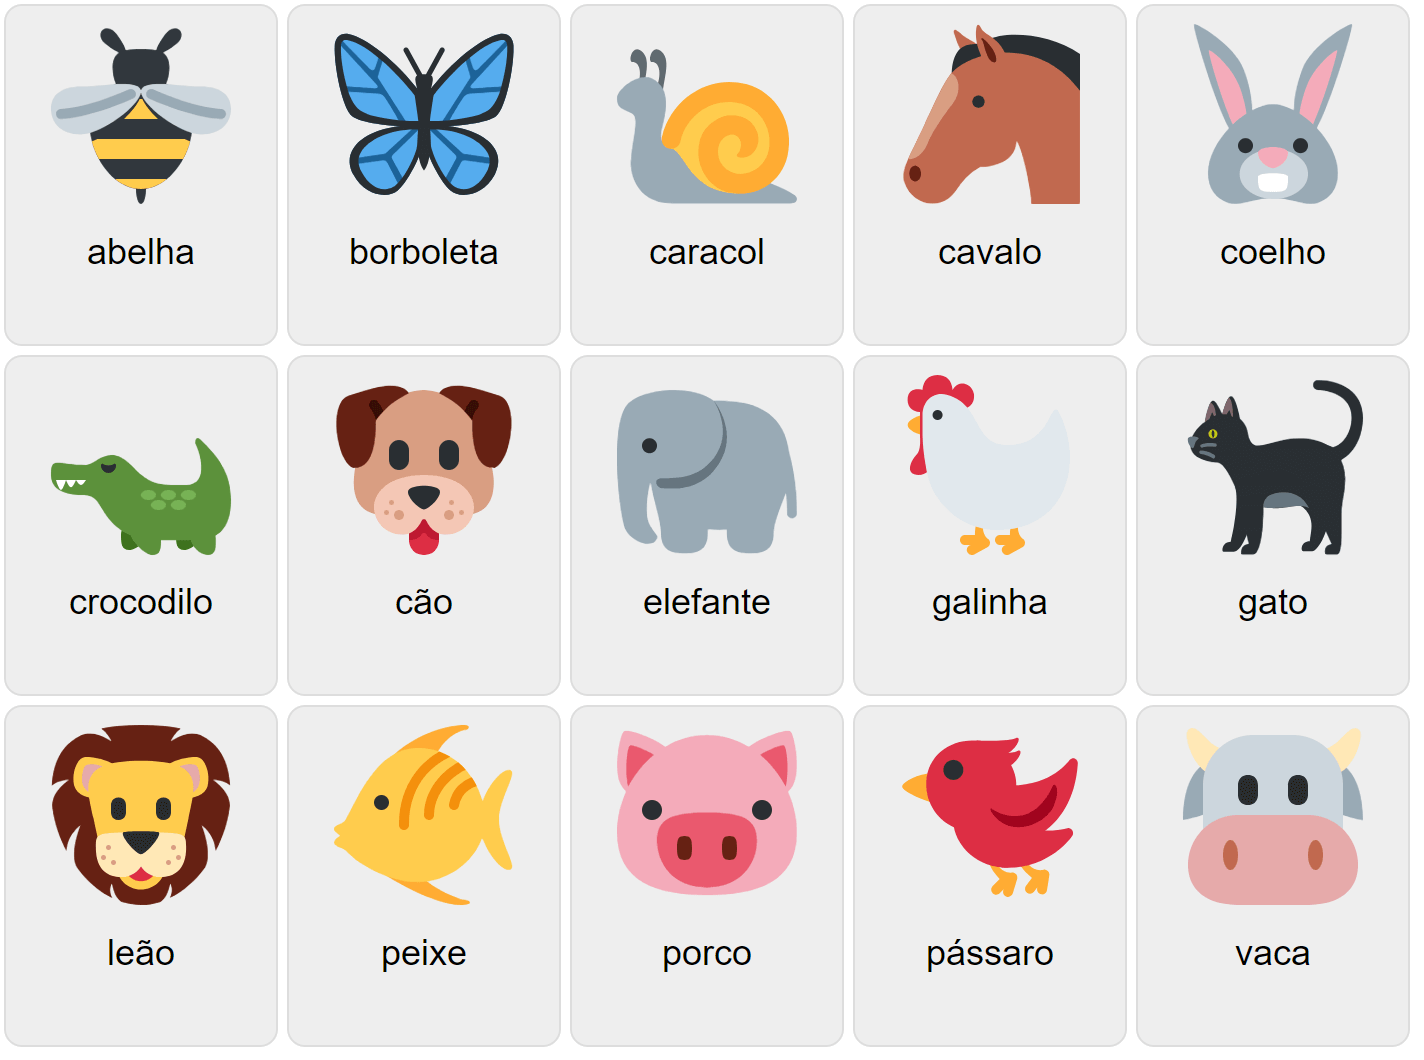 Тварини на португальській мові